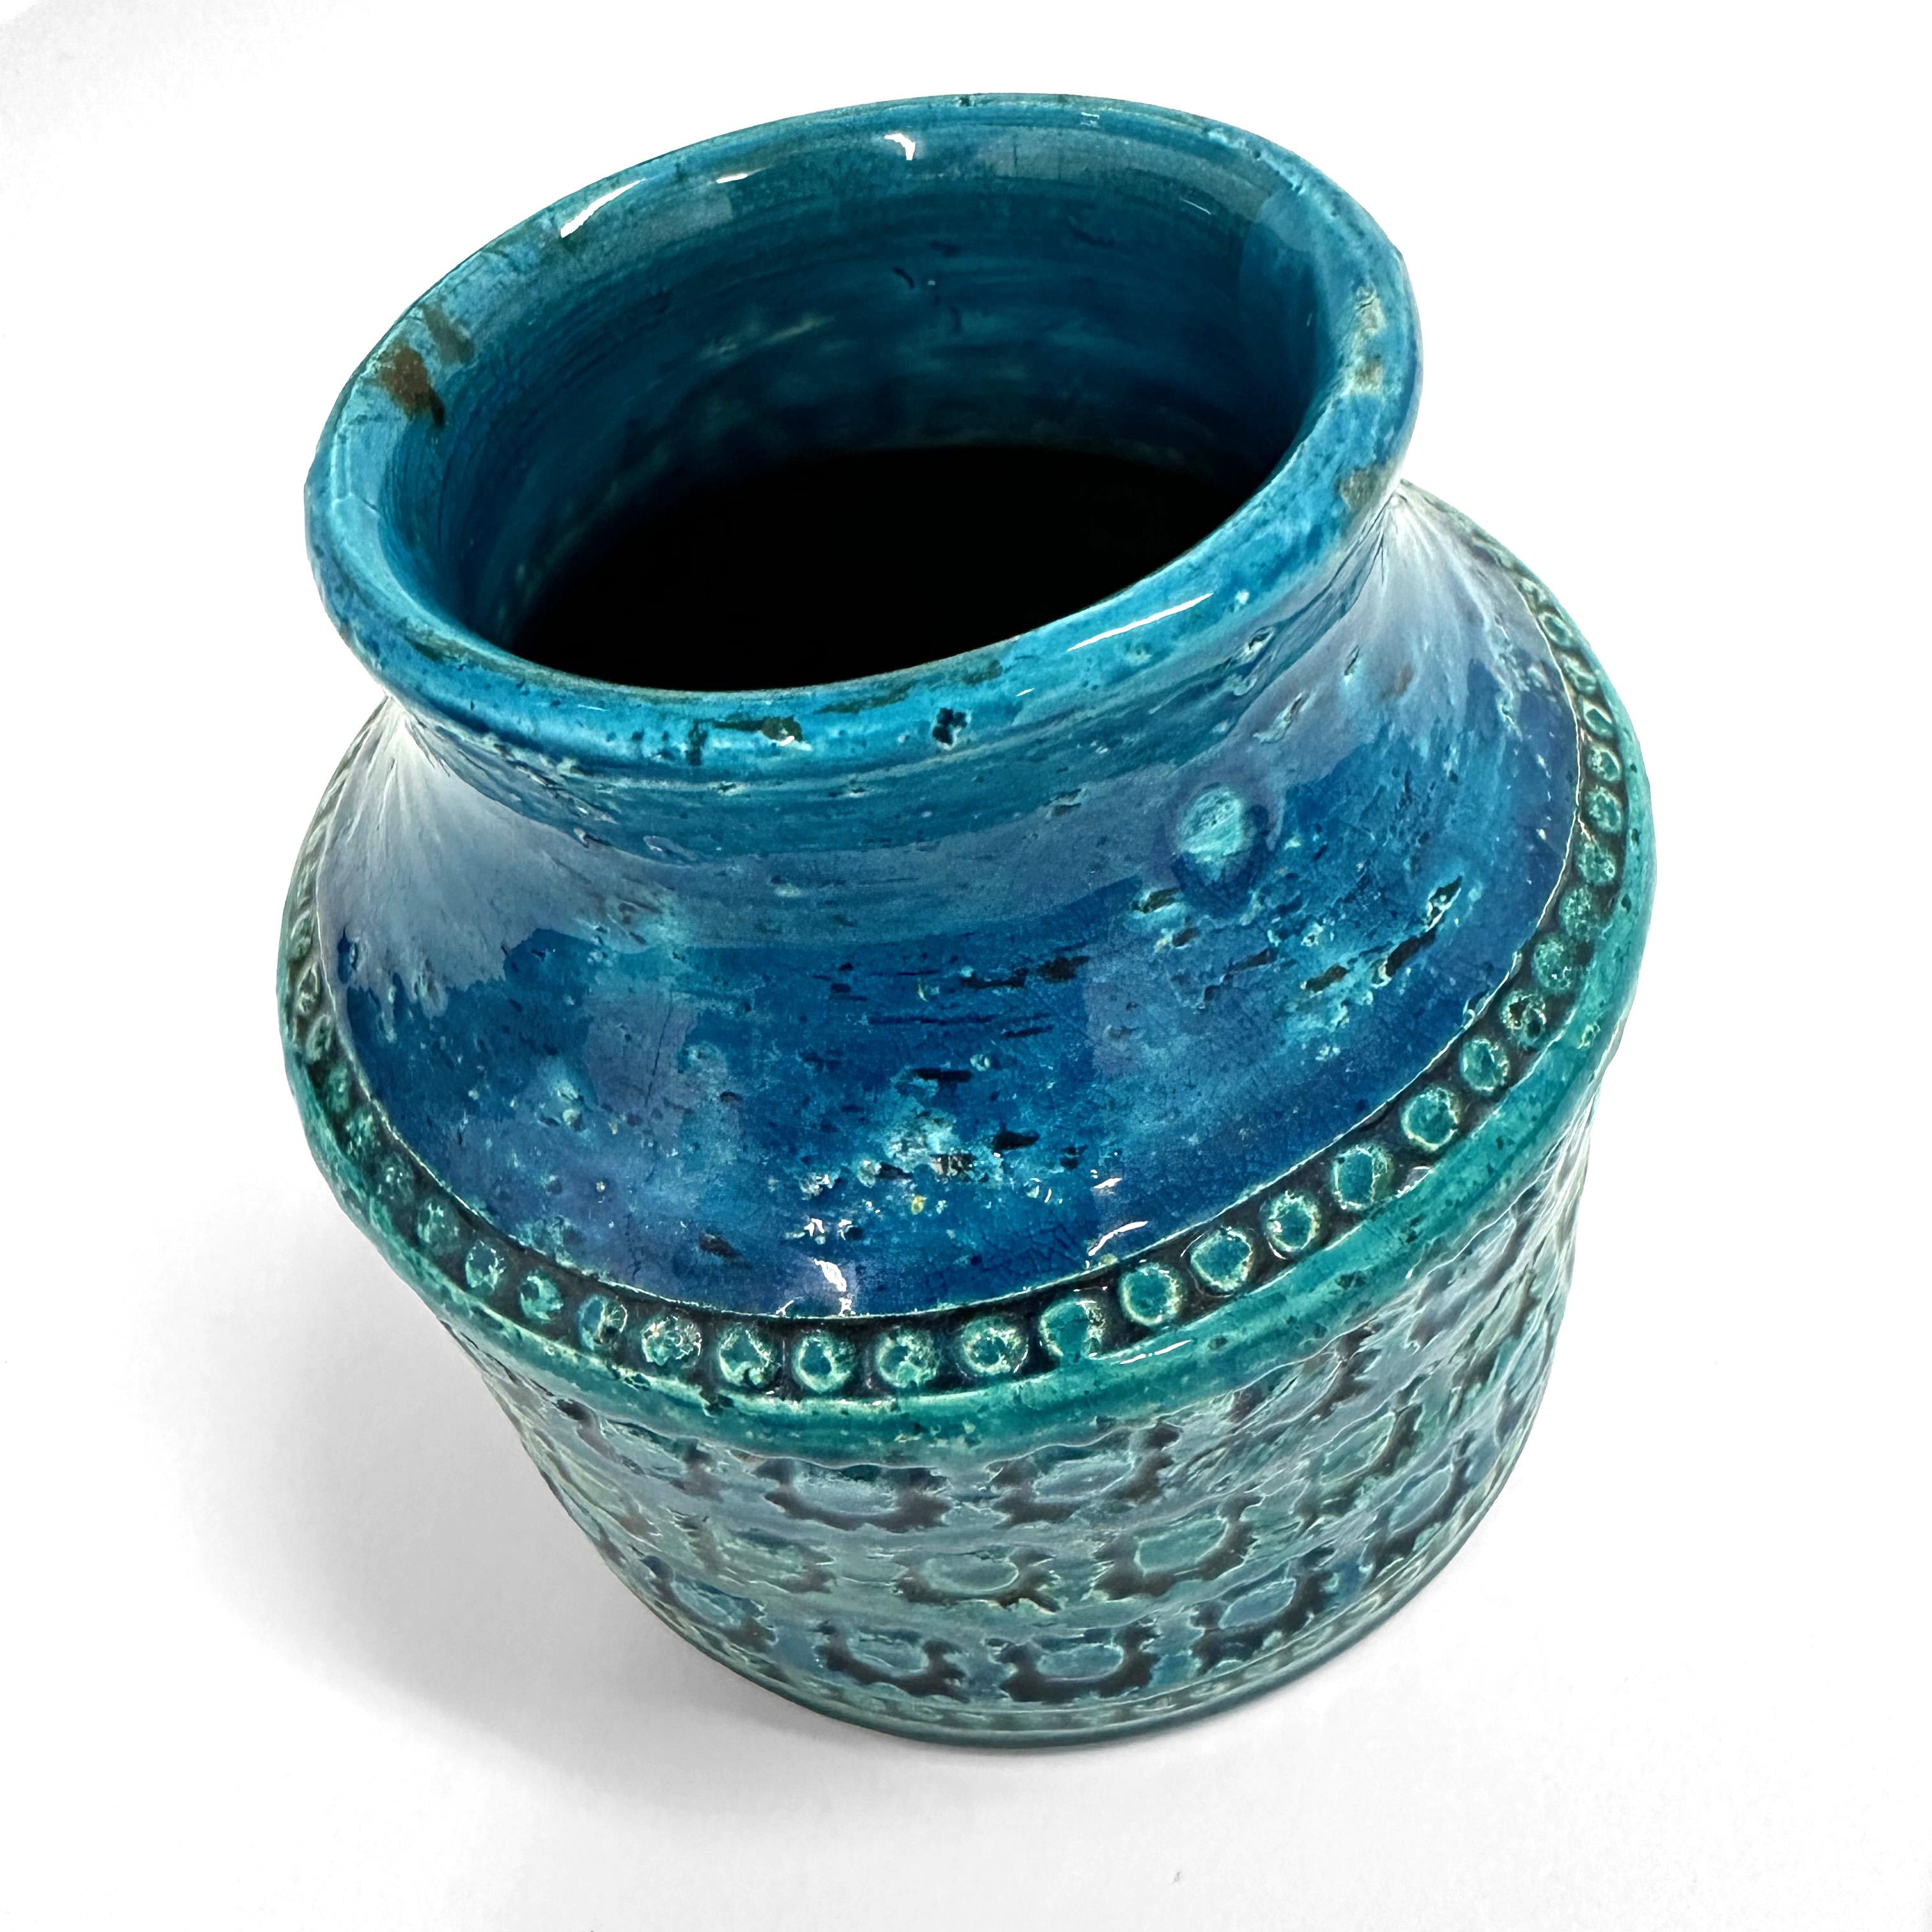 Vase à large ouverture en céramique de terre cuite conçu par Aldo Londi pour Bitossi en Italie à la fin des années 1950 ou au début des années 1960.

Fabriqué à la main en Italie avec des motifs géométriques spectaculaires estampés à la main dans